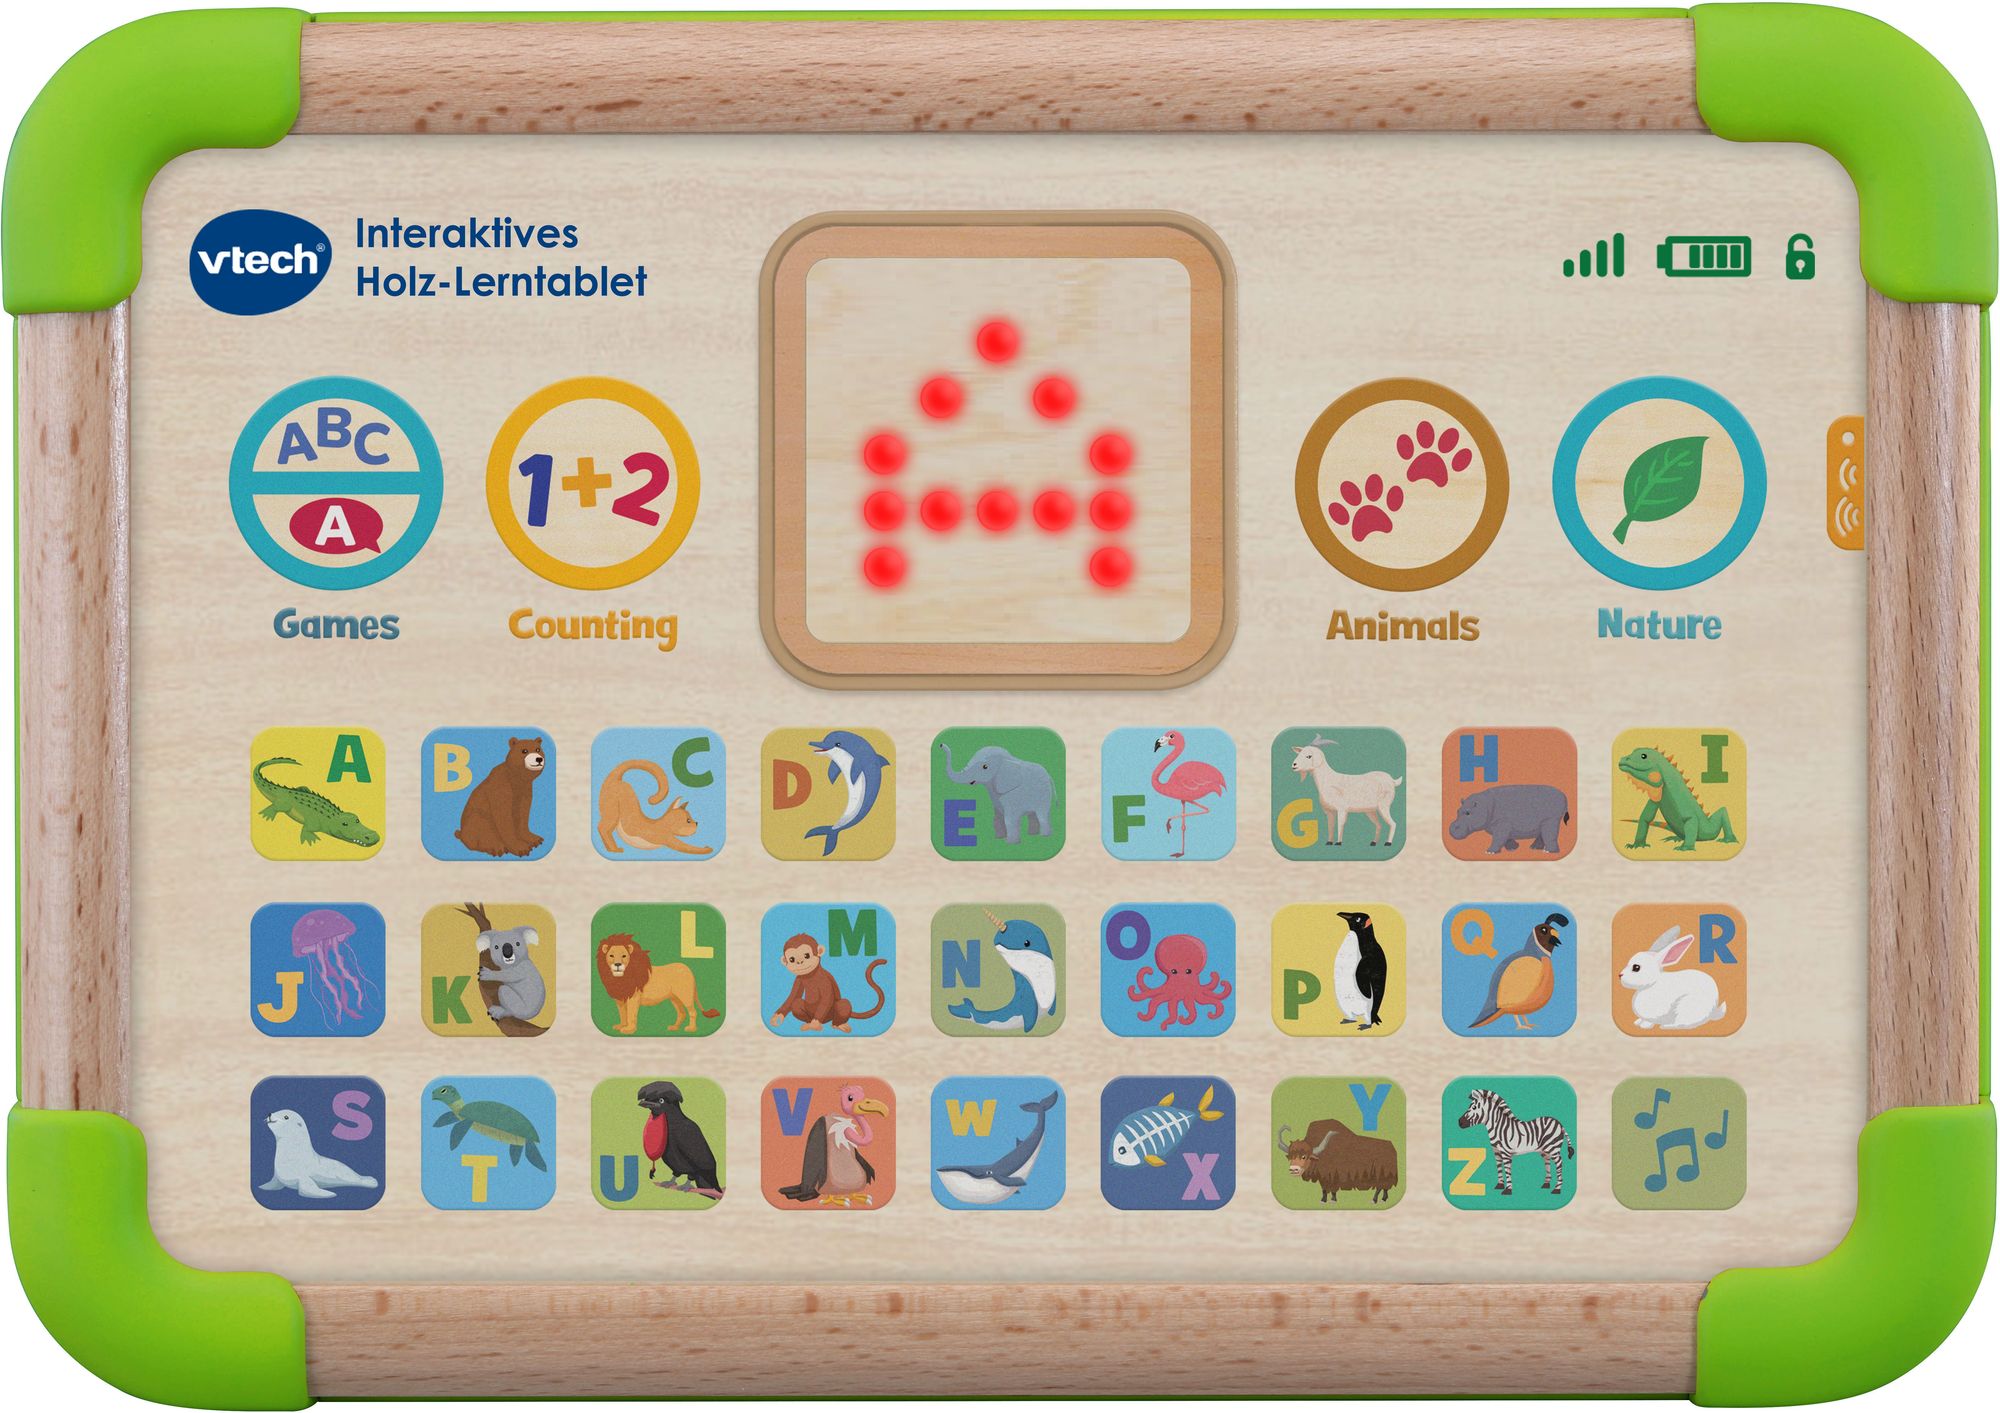 Vtech Baby - Interaktives Holz-Lerntablet' kaufen - Spielwaren